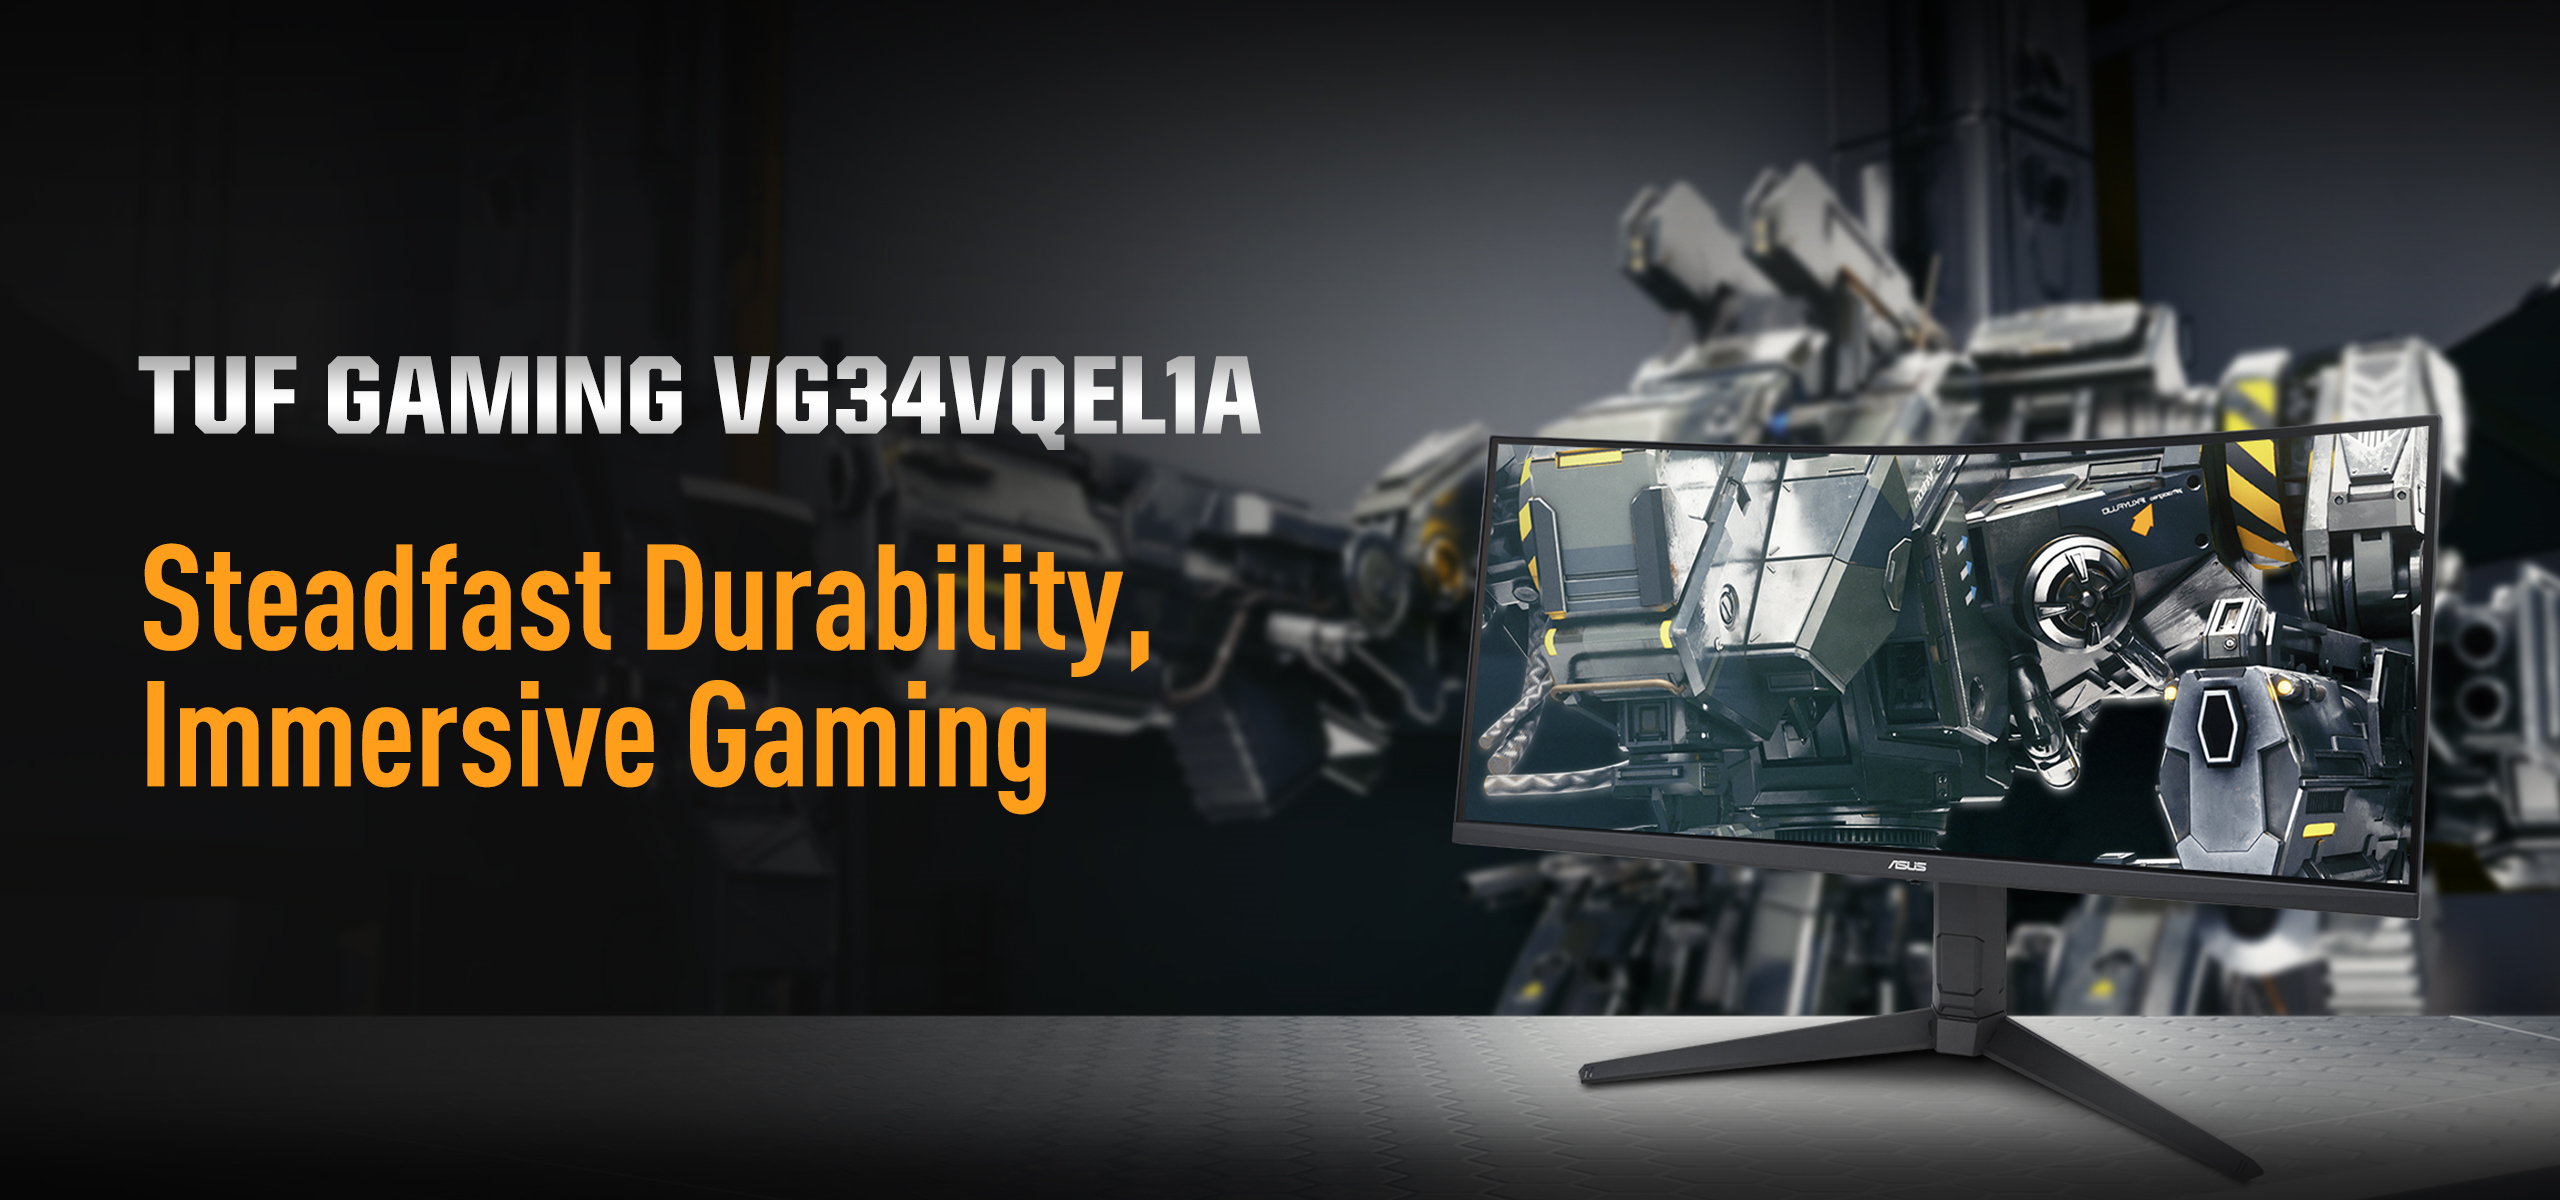 Belangrijkste verkoopkenmerken van de VG34VQEL1A